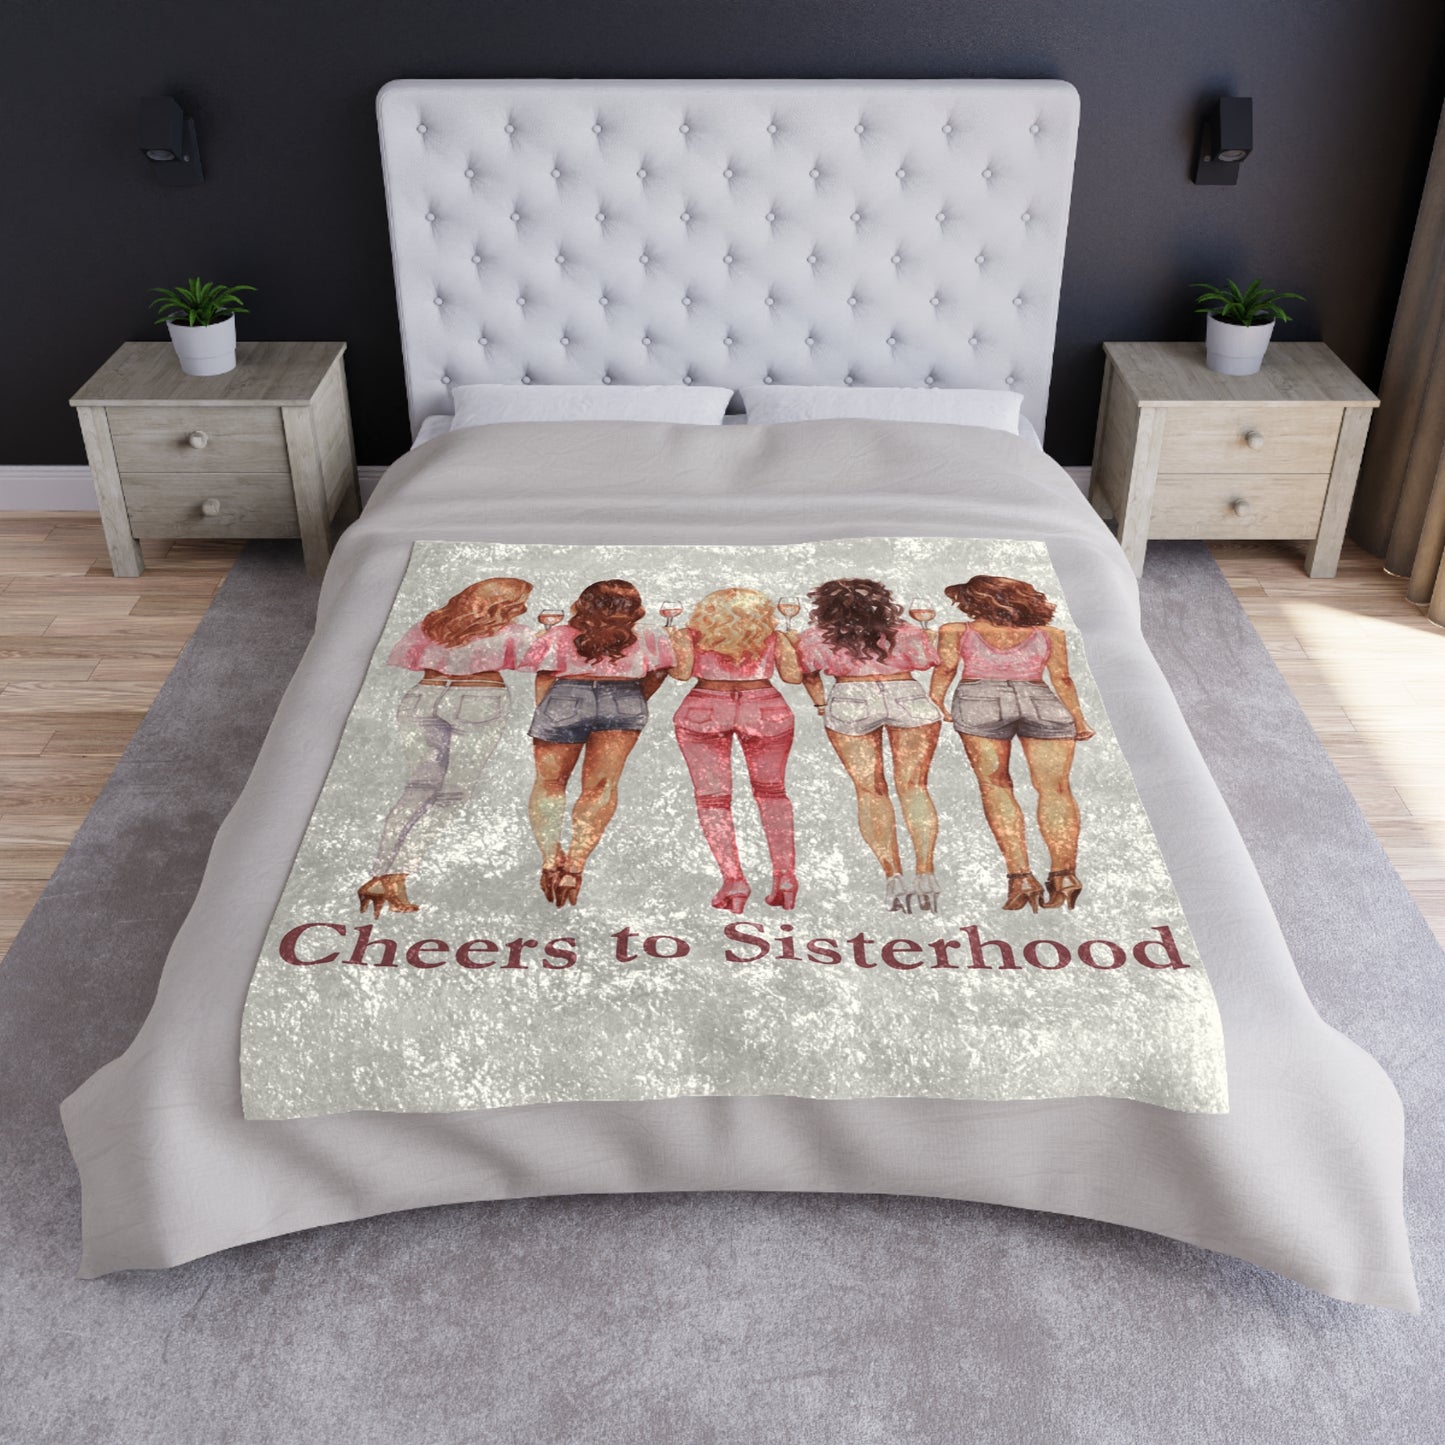 Cheers to Sisterhood - Sorority Chic Bachelorette Party Illustration - Crushed Velvet Blanket